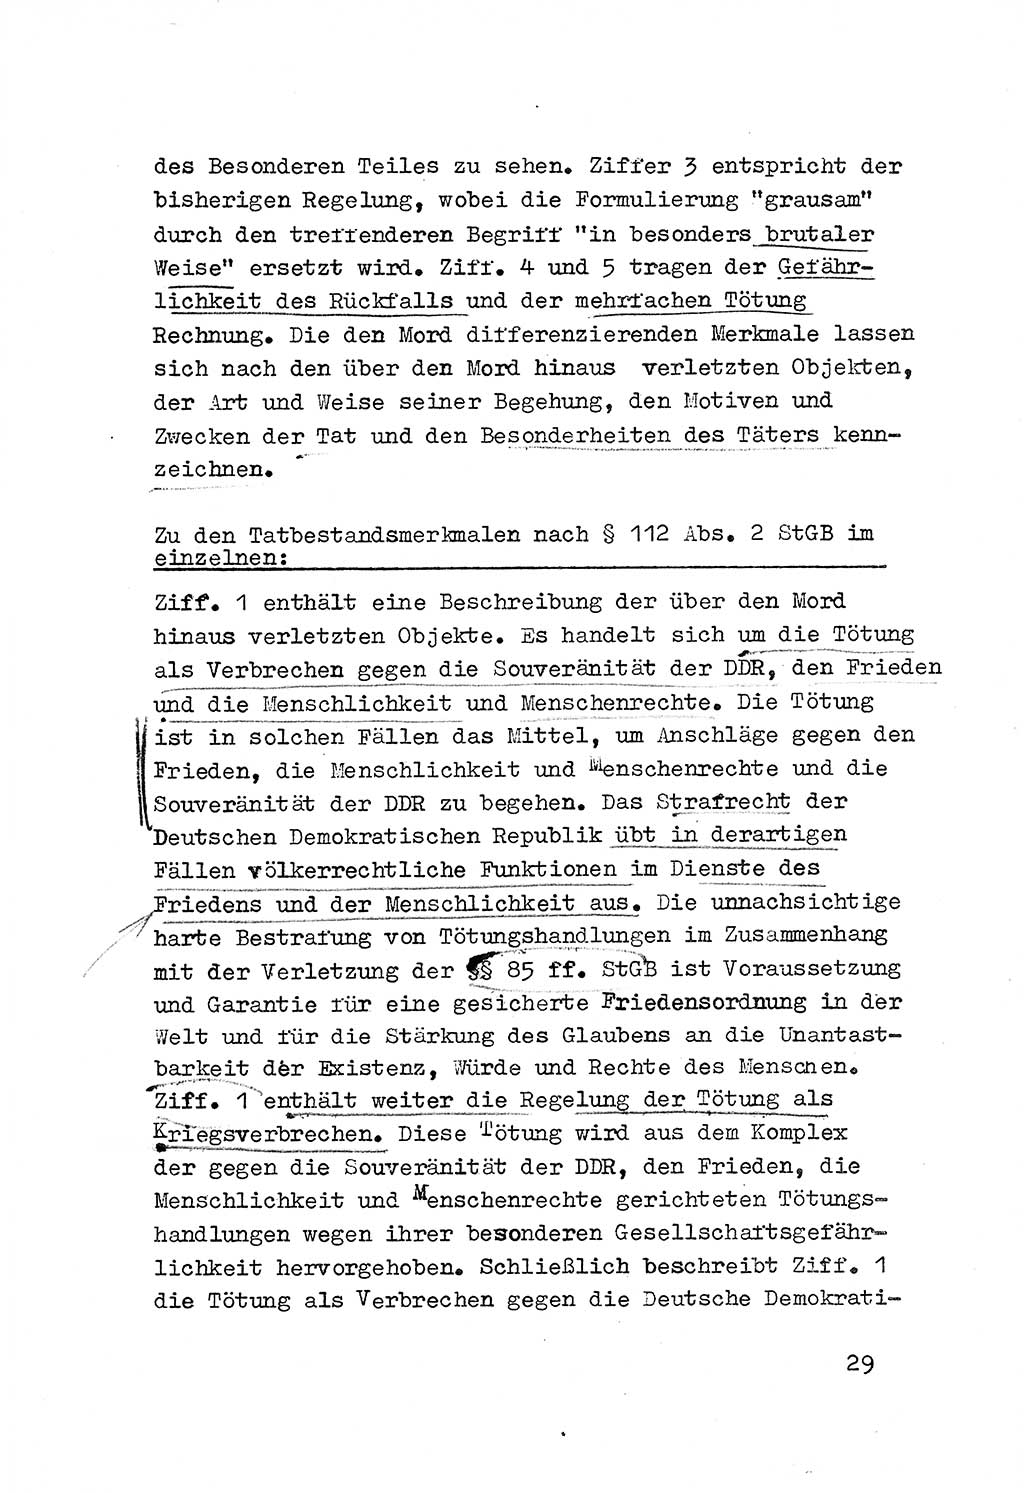 Strafrecht der DDR (Deutsche Demokratische Republik), Besonderer Teil, Lehrmaterial, Heft 3 1969, Seite 29 (Strafr. DDR BT Lehrmat. H. 3 1969, S. 29)